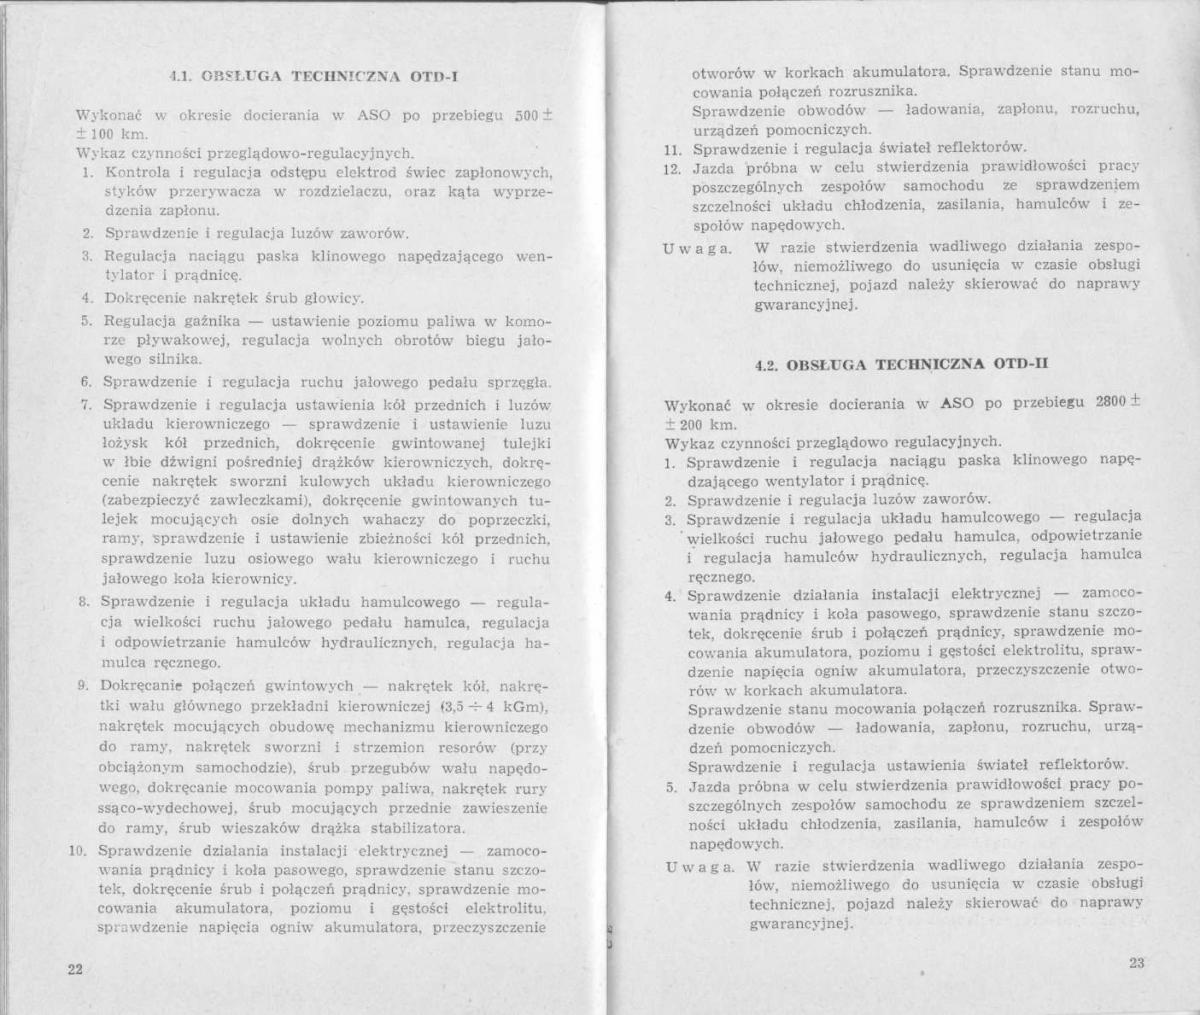 FSO Warszawa instrukcja obslugi / page 11